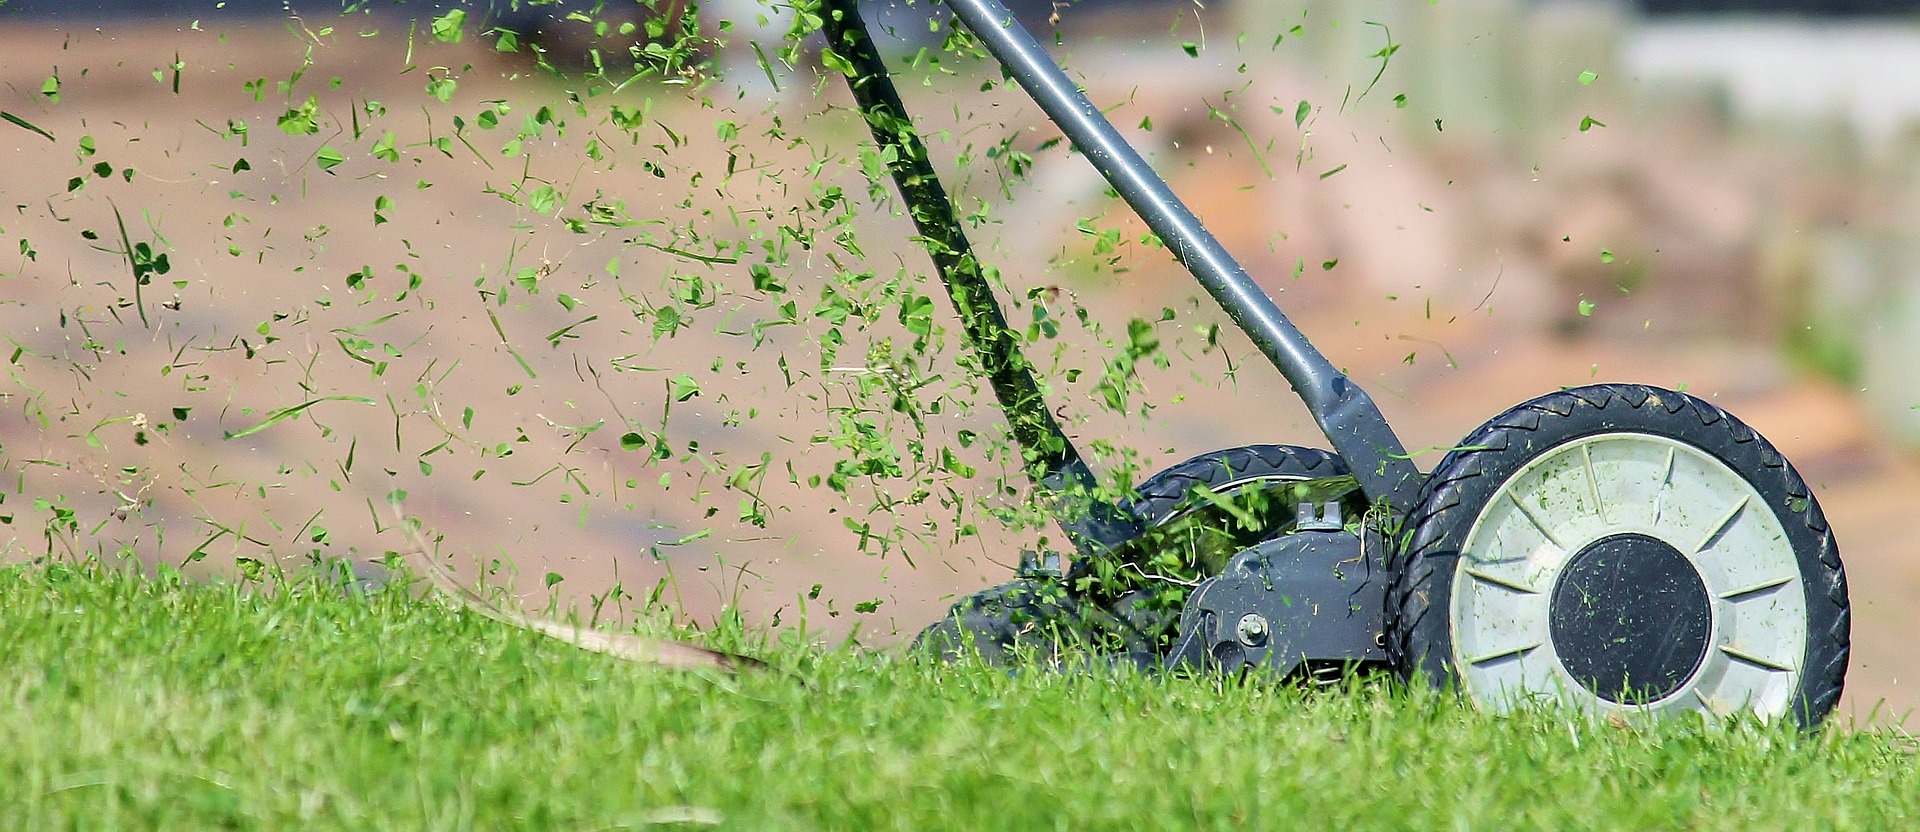 Handmower cutting lawn